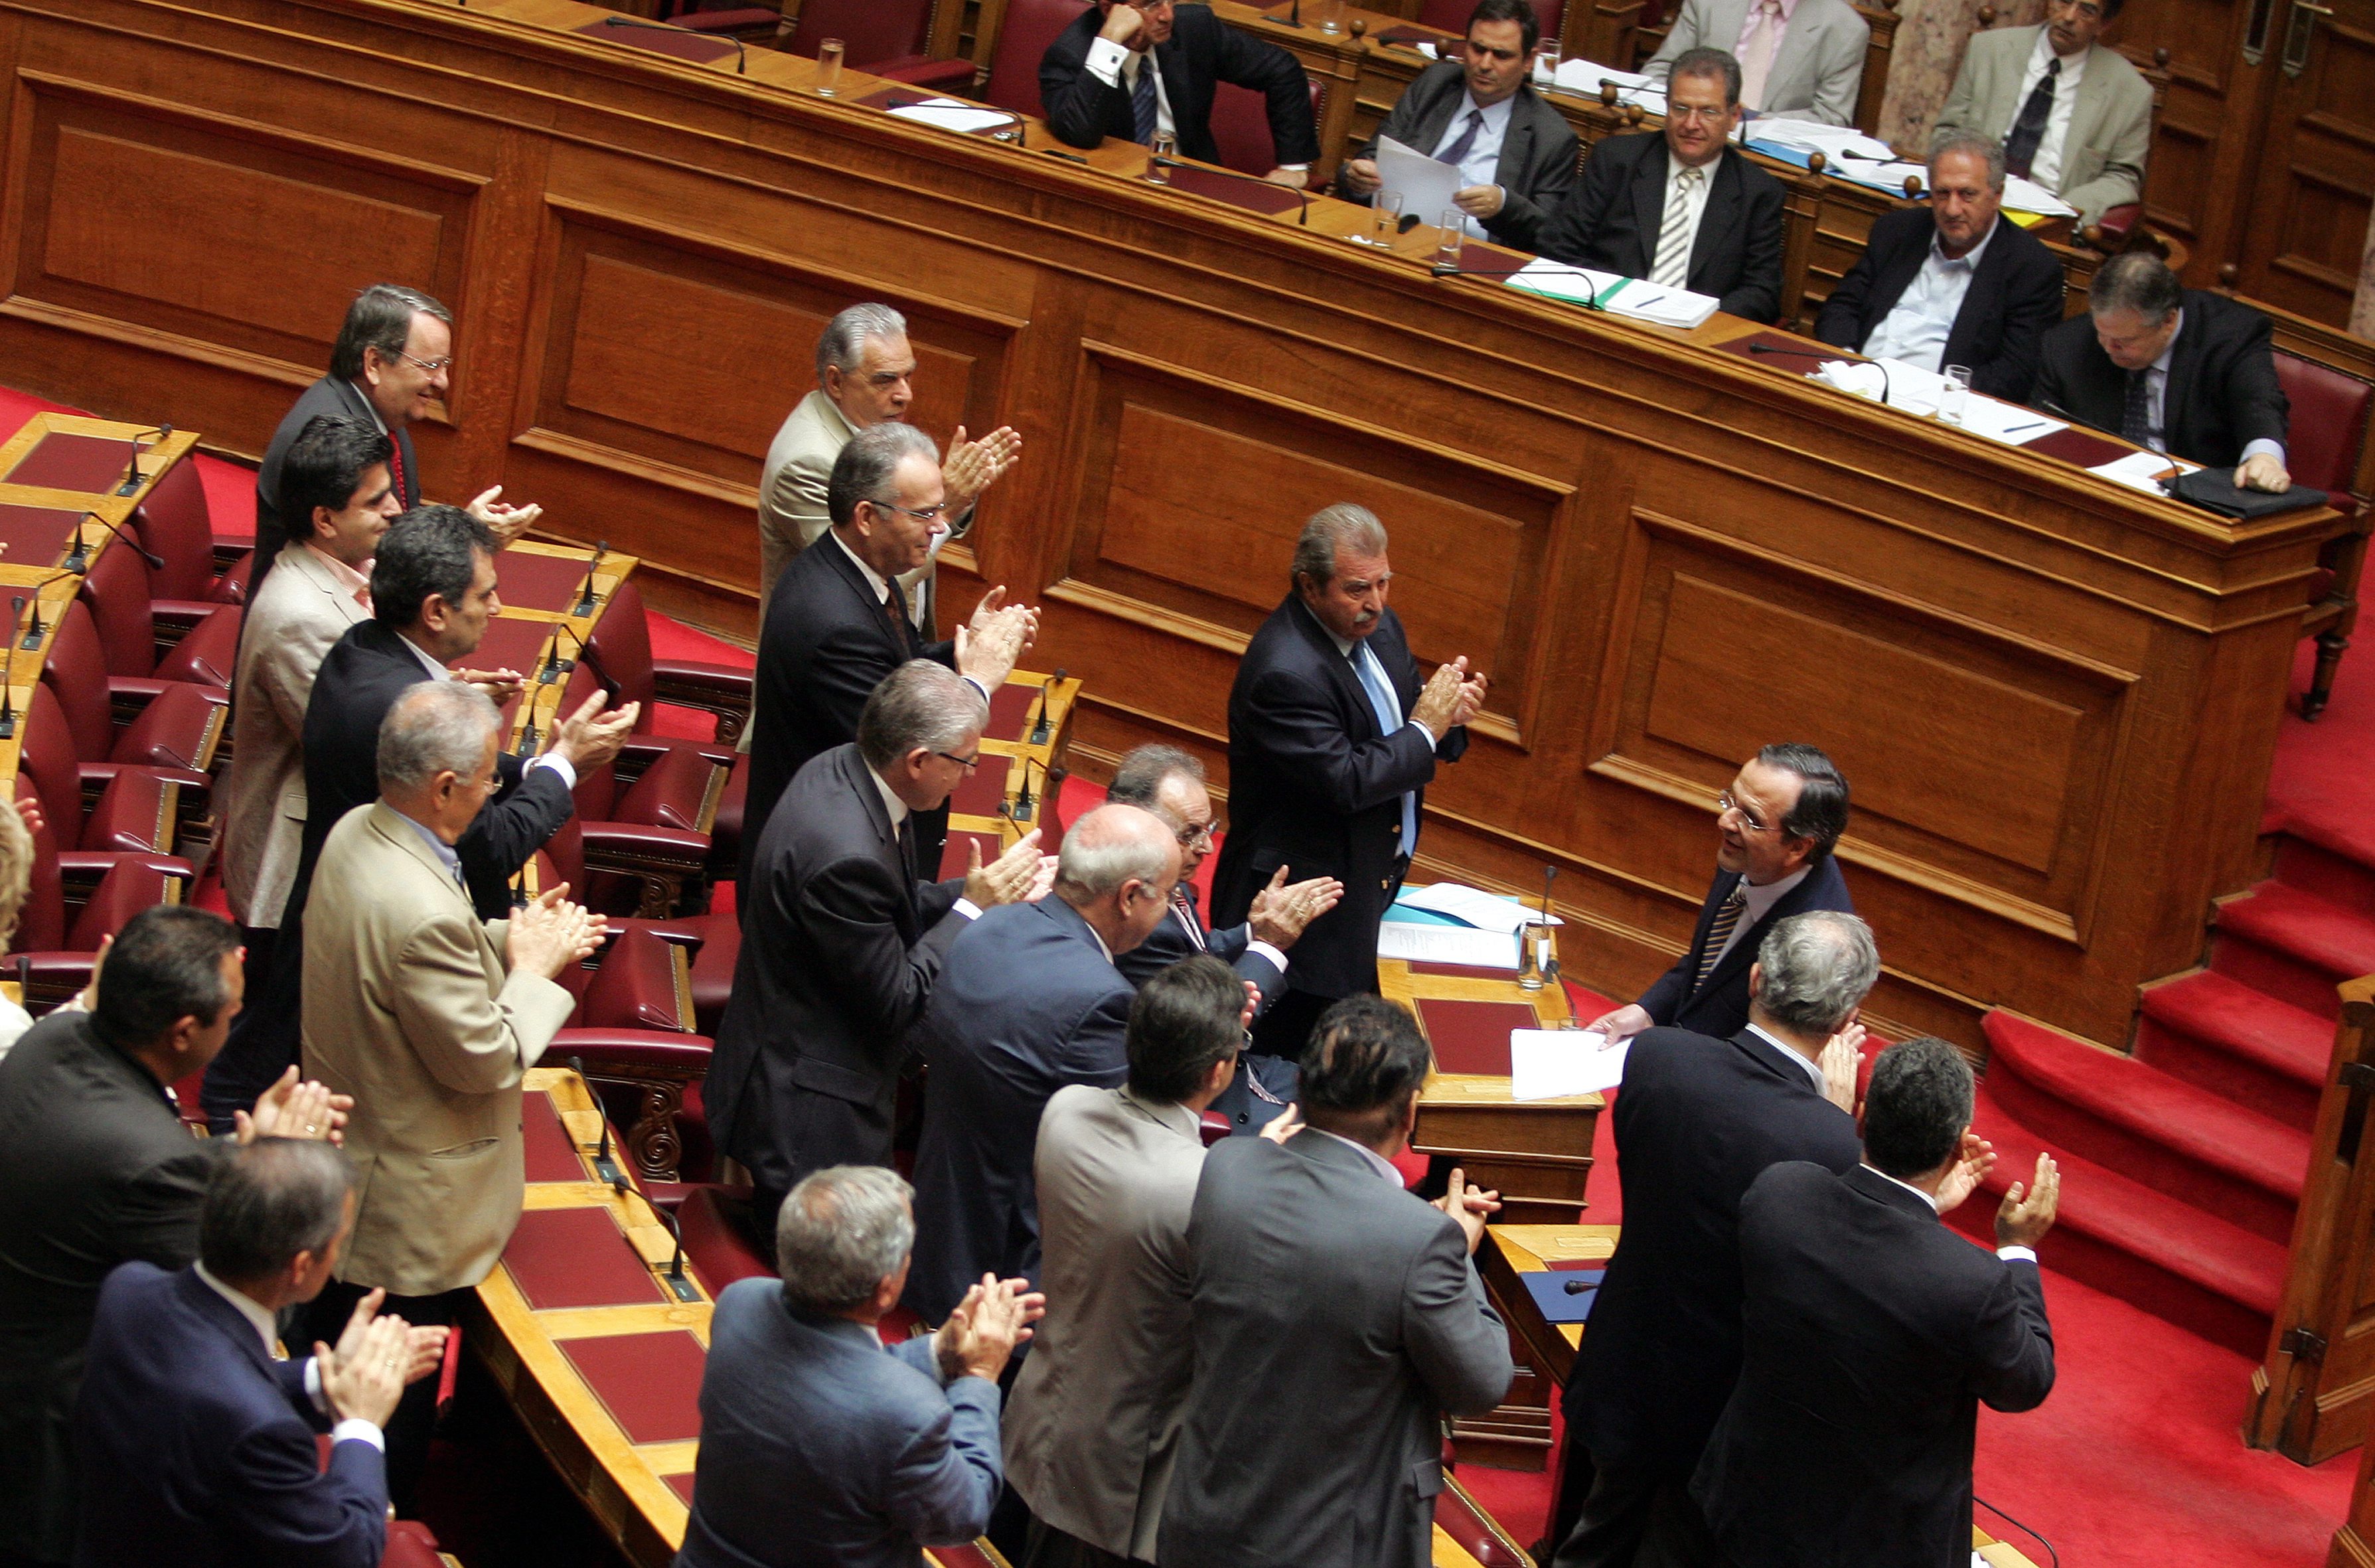 Гръцките депутати с тлъсти заплати въпреки кризата